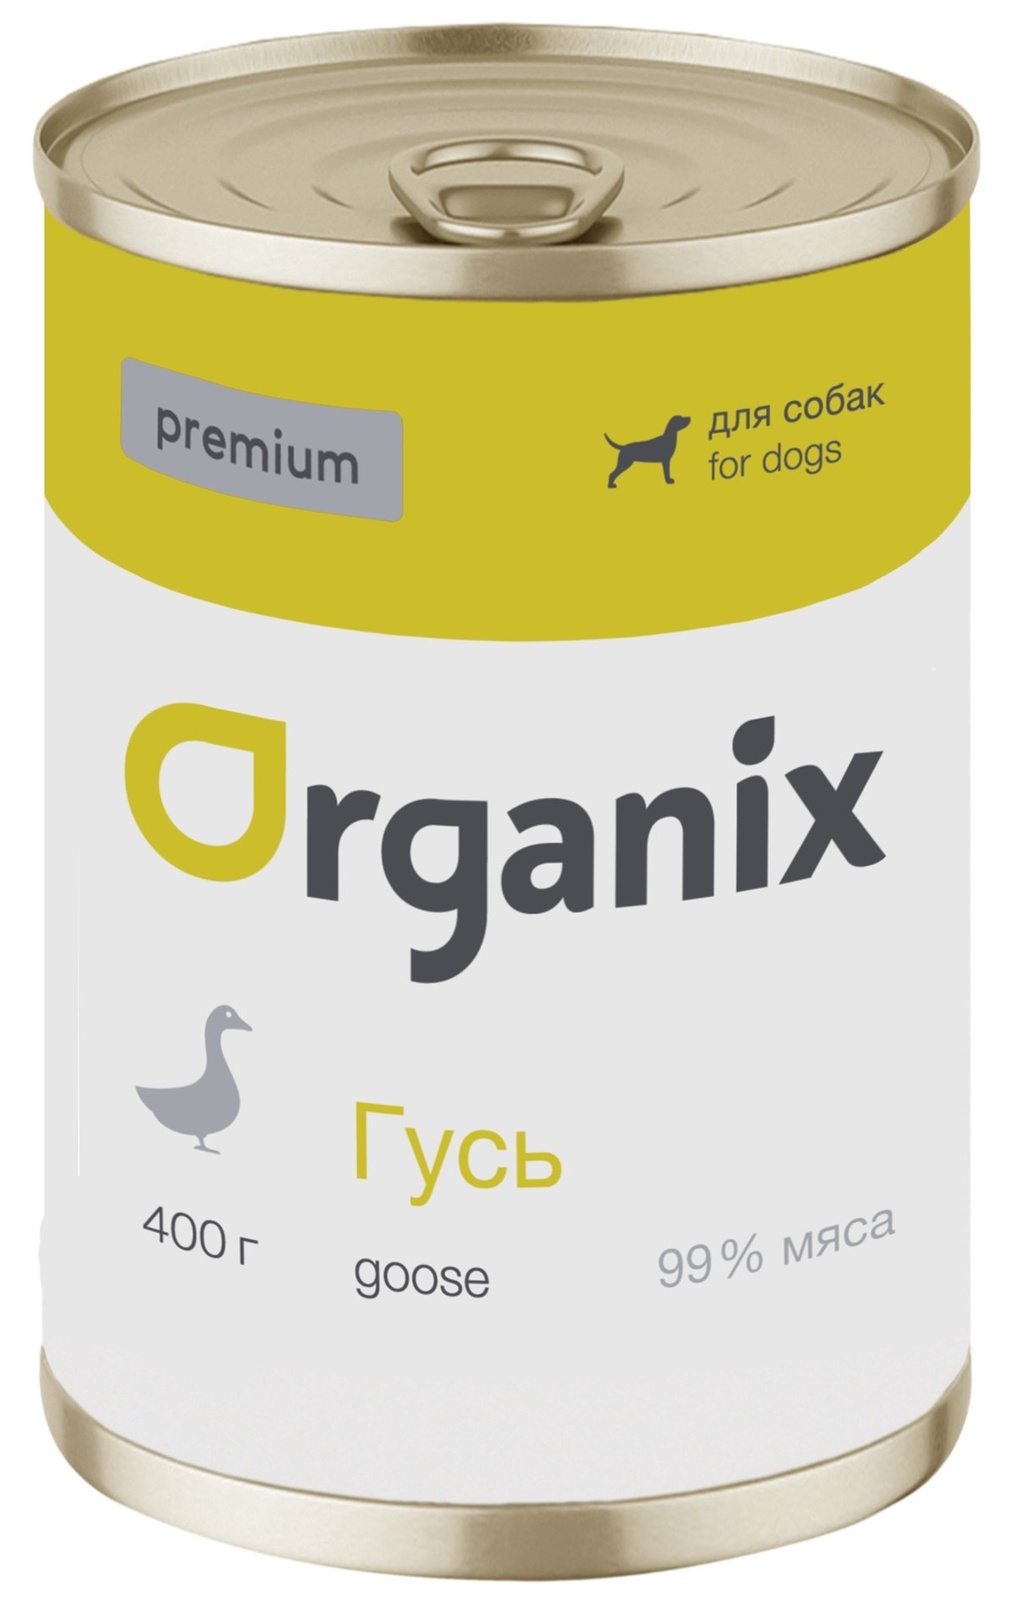 Organix консервы Organix монобелковые премиум консервы для собак, с гусем (100 г) organix консервы organix консервы для собак ягненок с рубцом и морковью 100 г